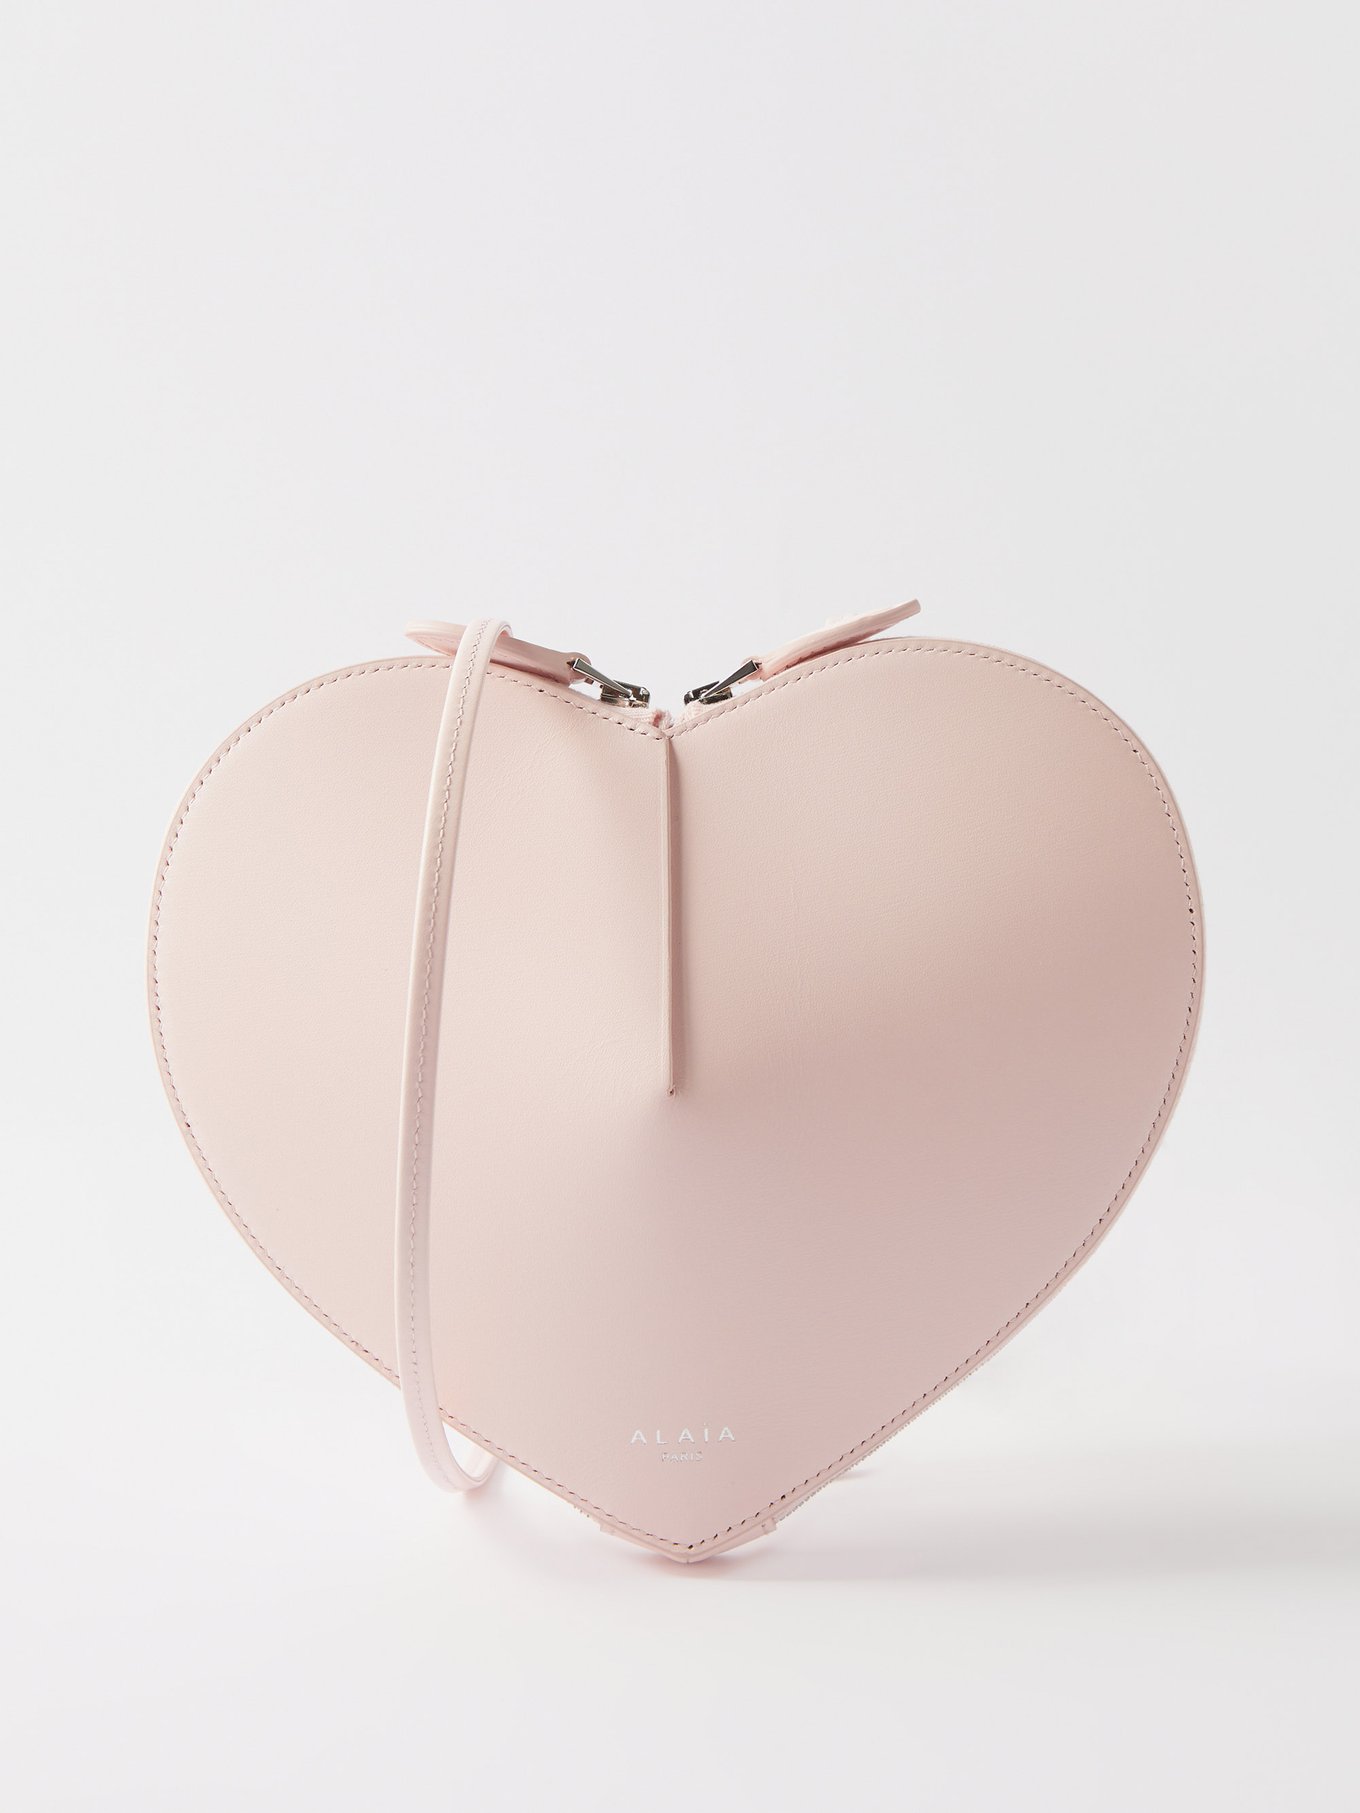 Pink Le Cœur leather cross-body bag, ALAÏA